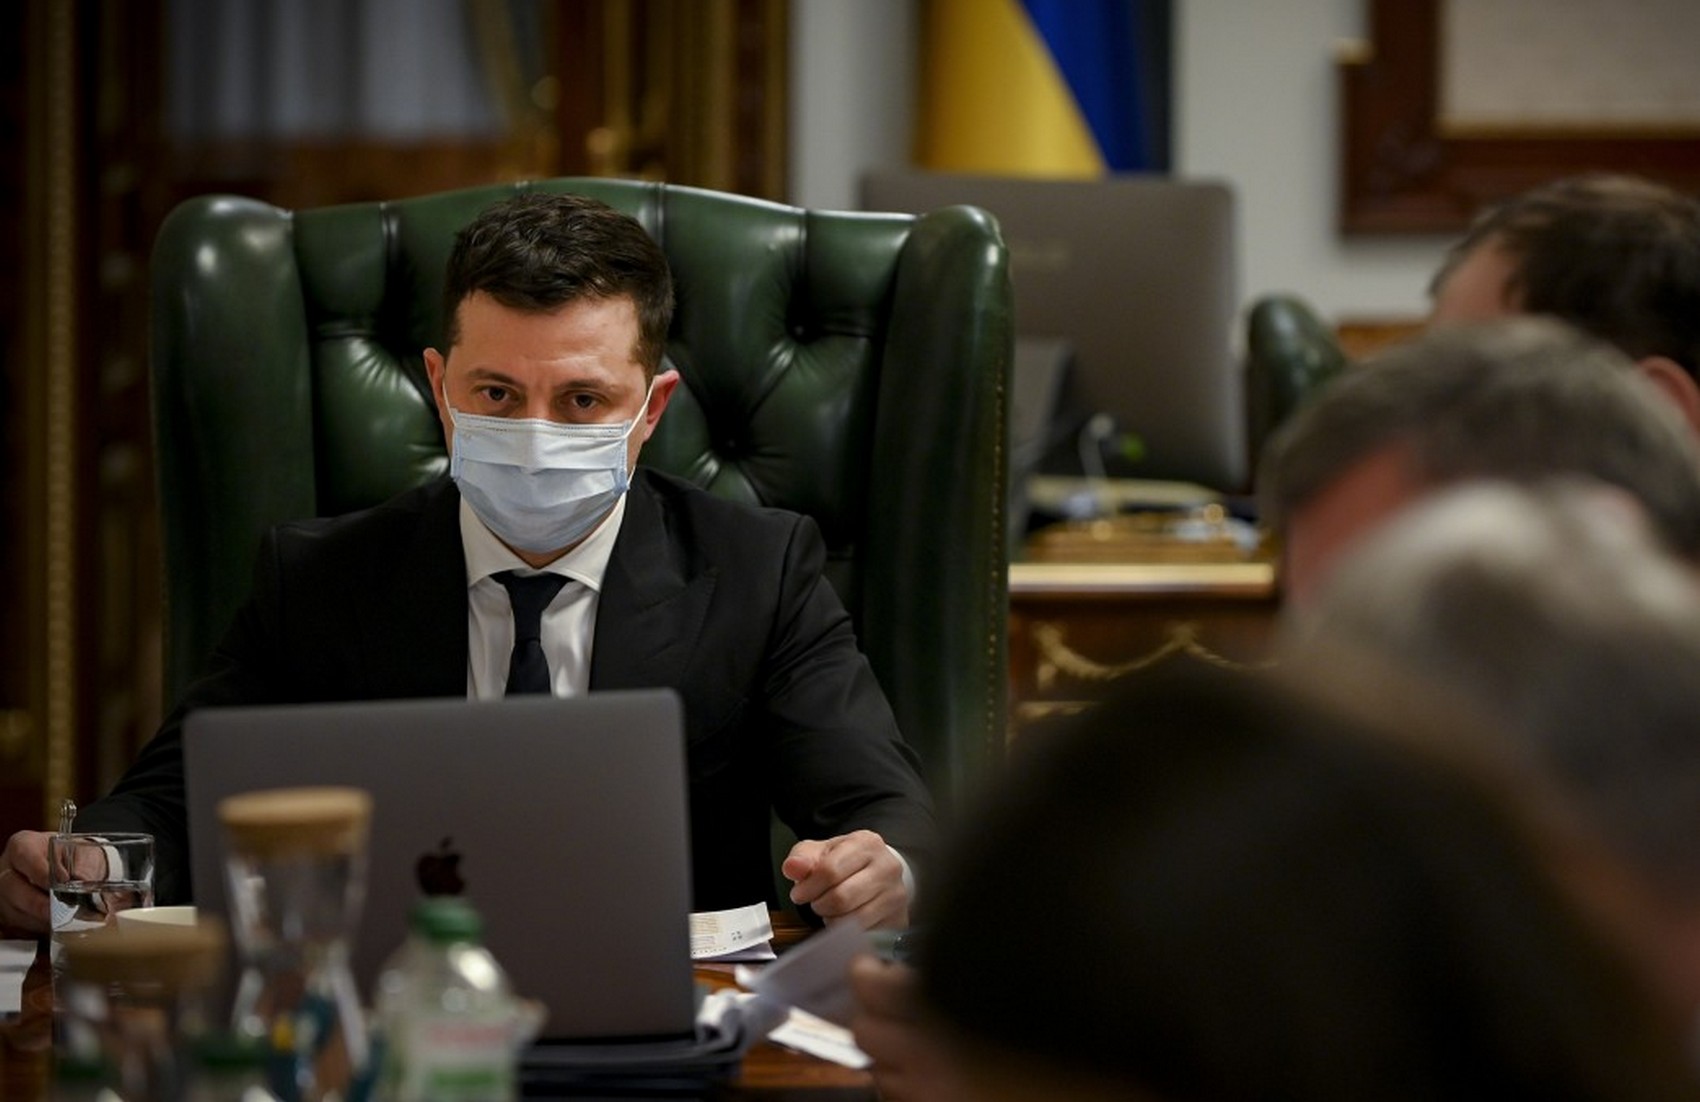 Зеленский ввел в действие решение СНБО о санкциях против Медведчука